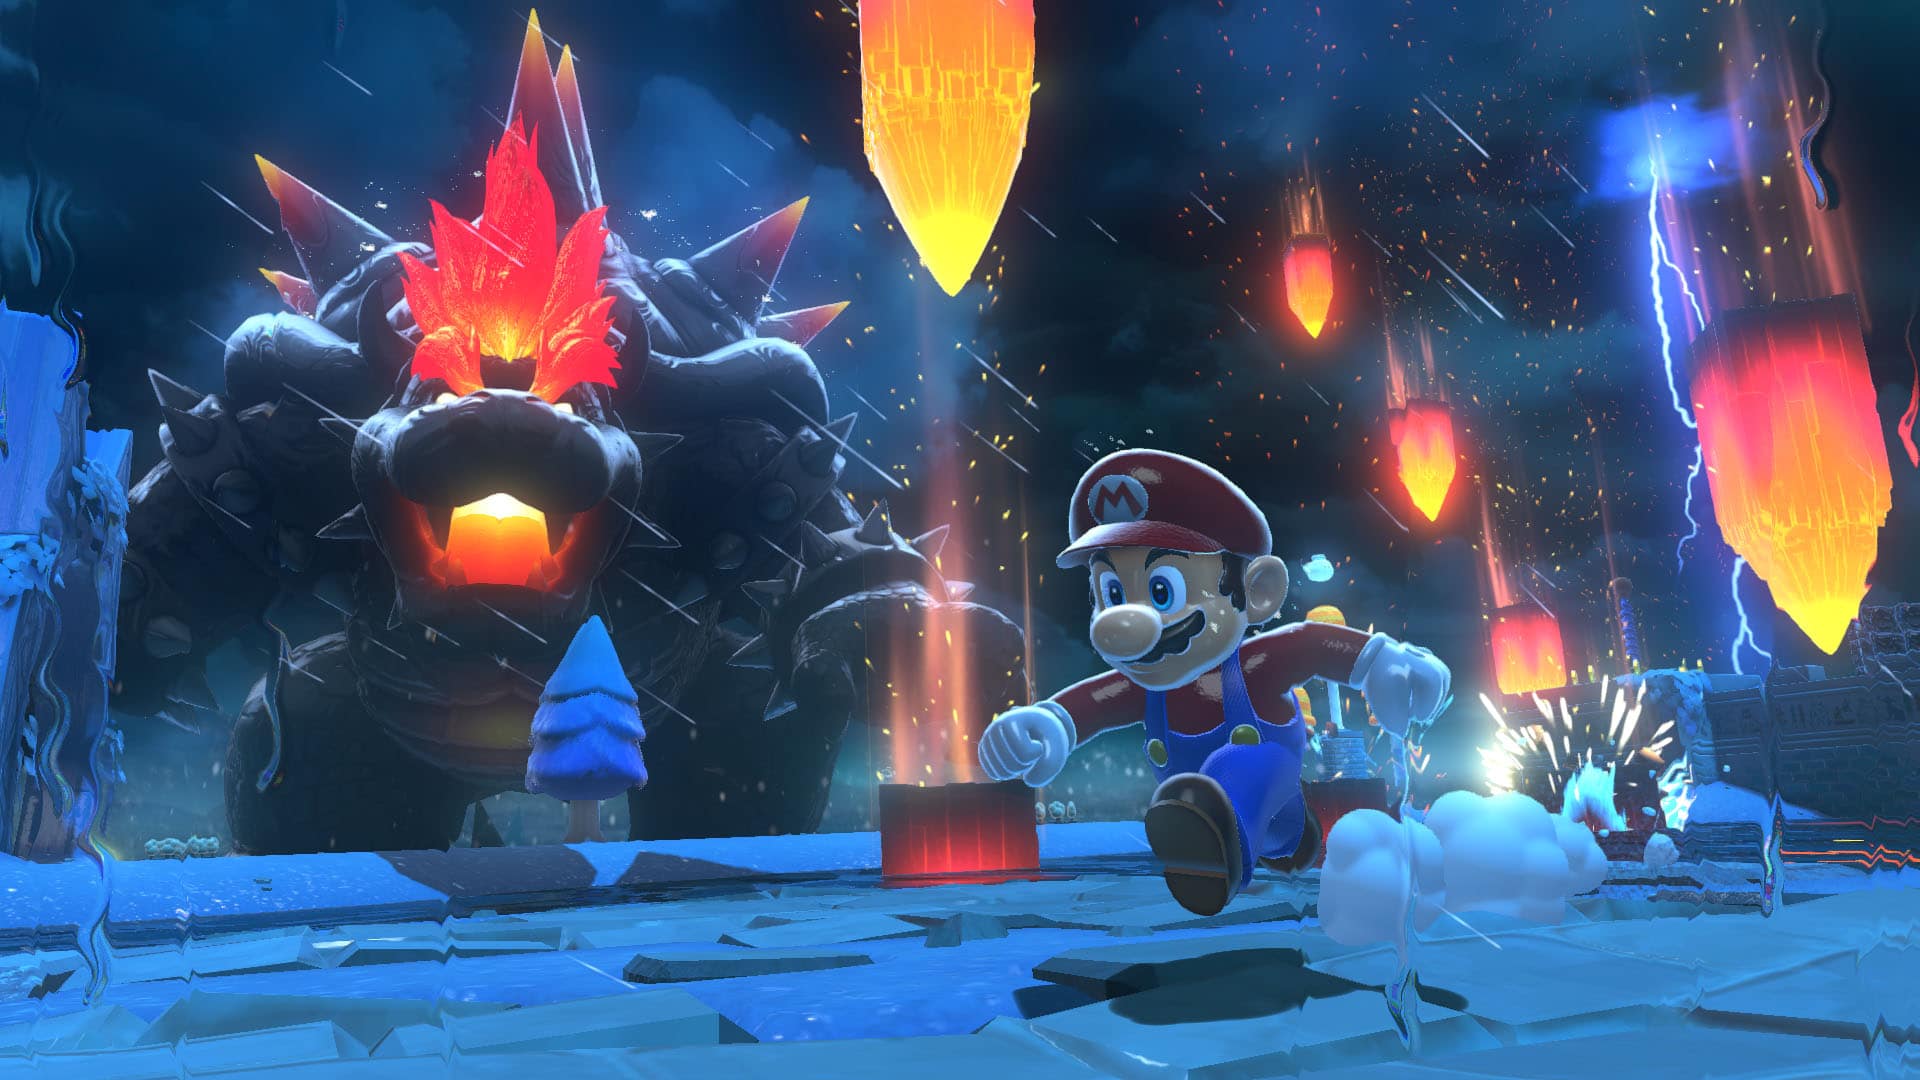 Nuevo vídeo promocional de Super Mario 3D World + Bowser’s Fury: “Dos aventuras en una”